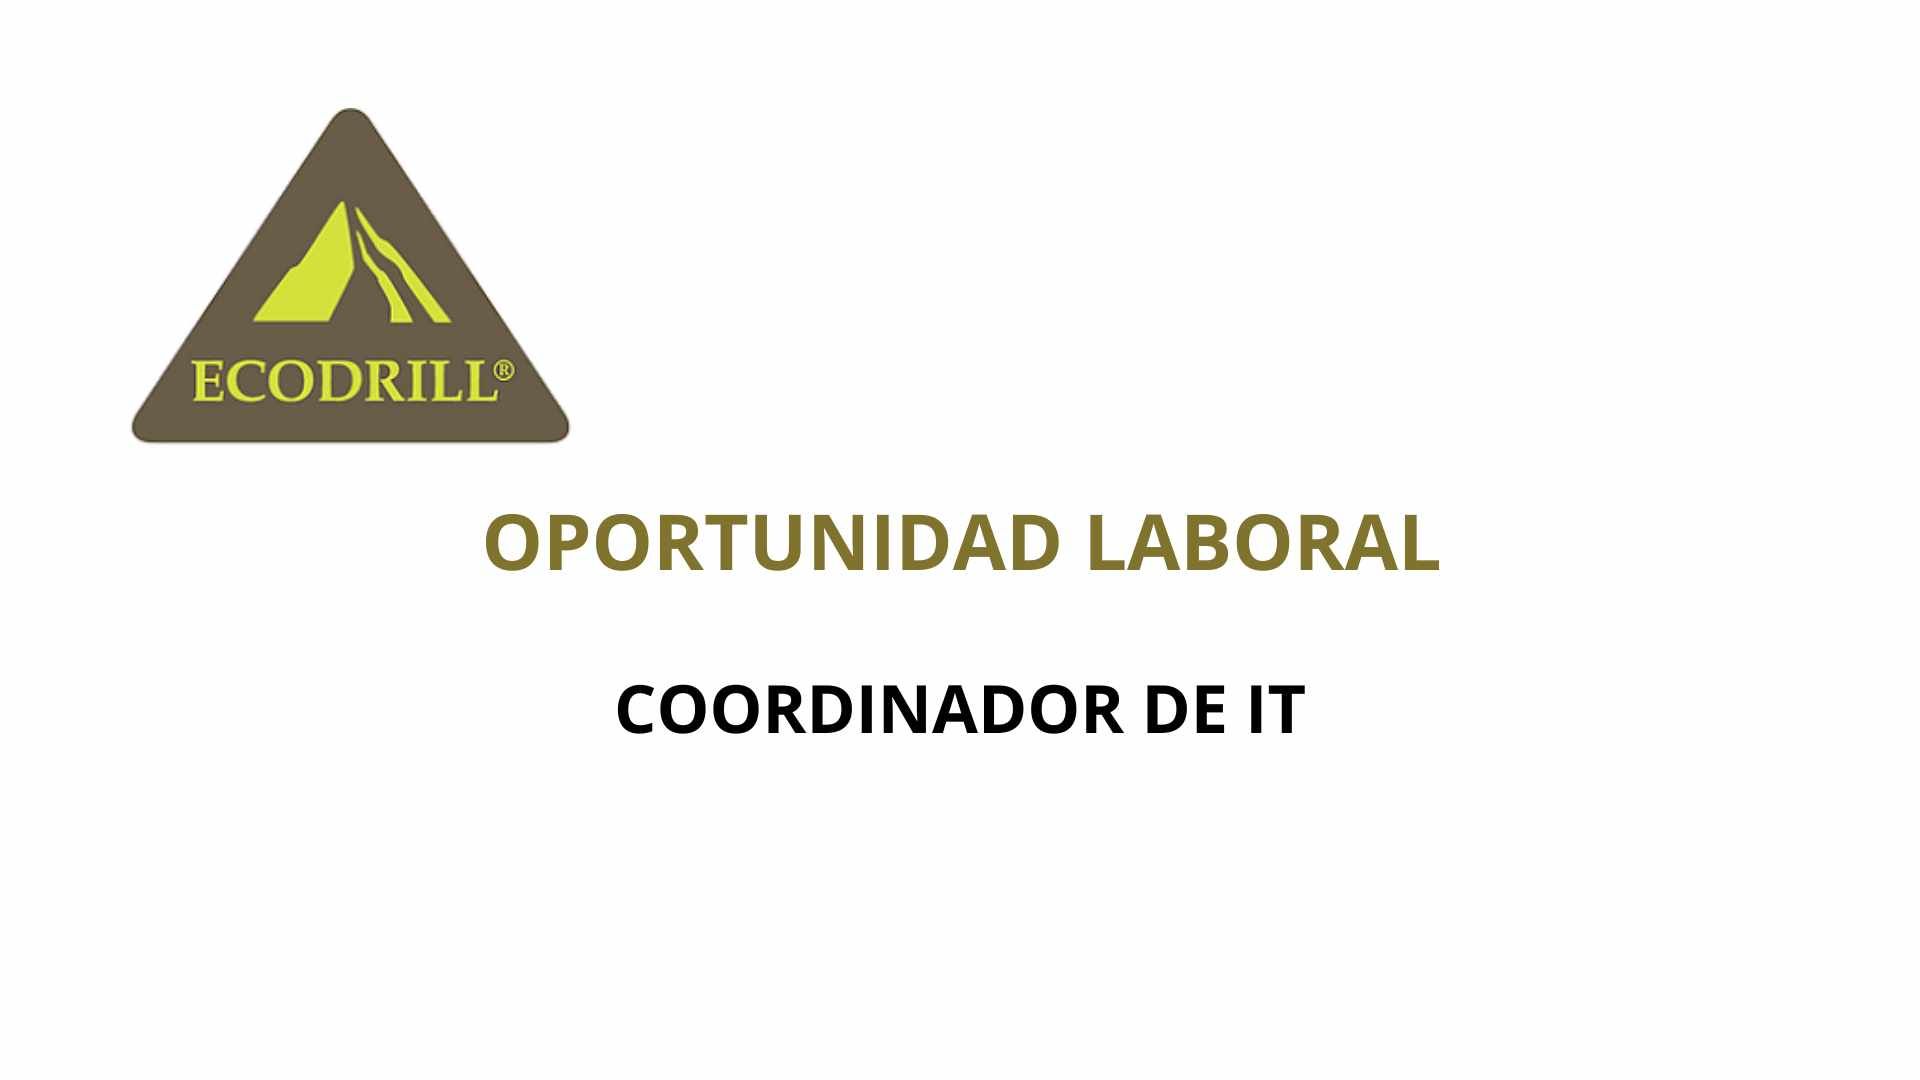 Oportunidad Laboral Ecodrill